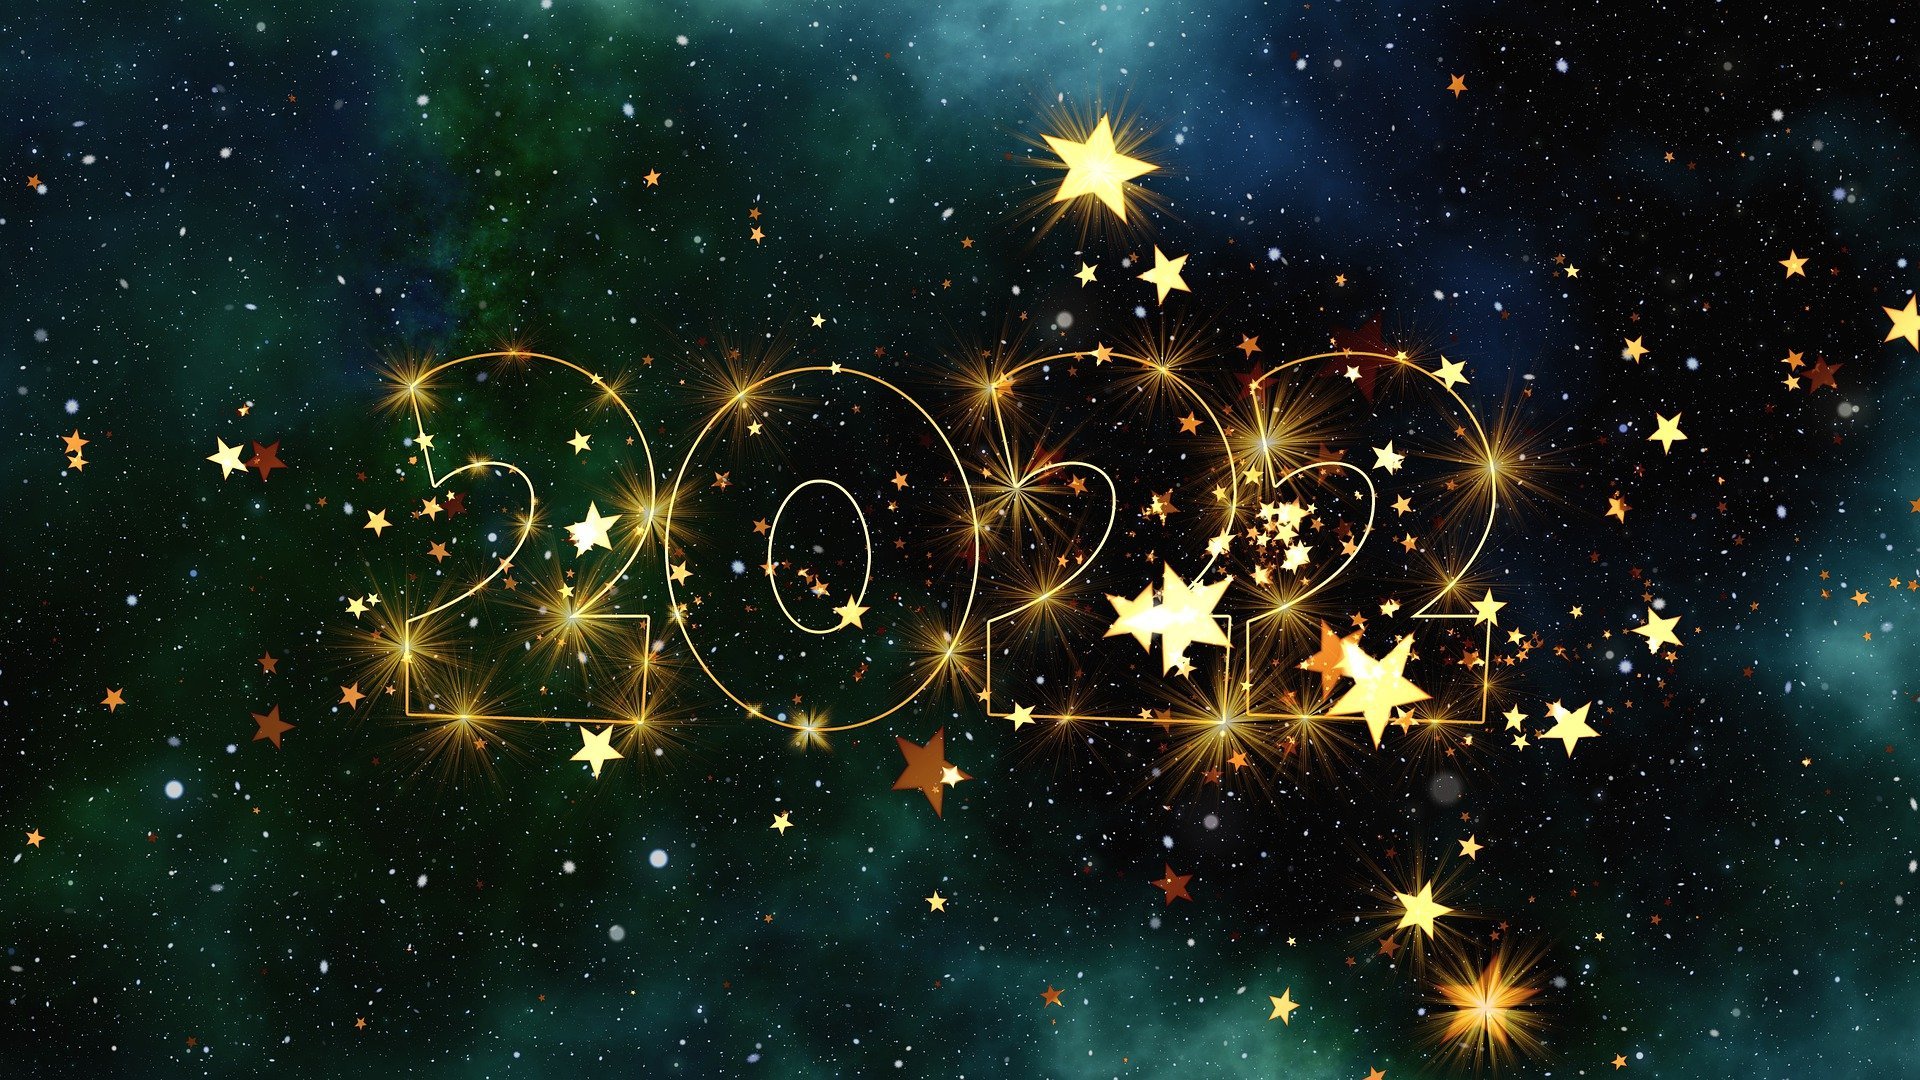 Честита Нова година скъпи читатели Посрещаме 2022 ра с възродени надежди за